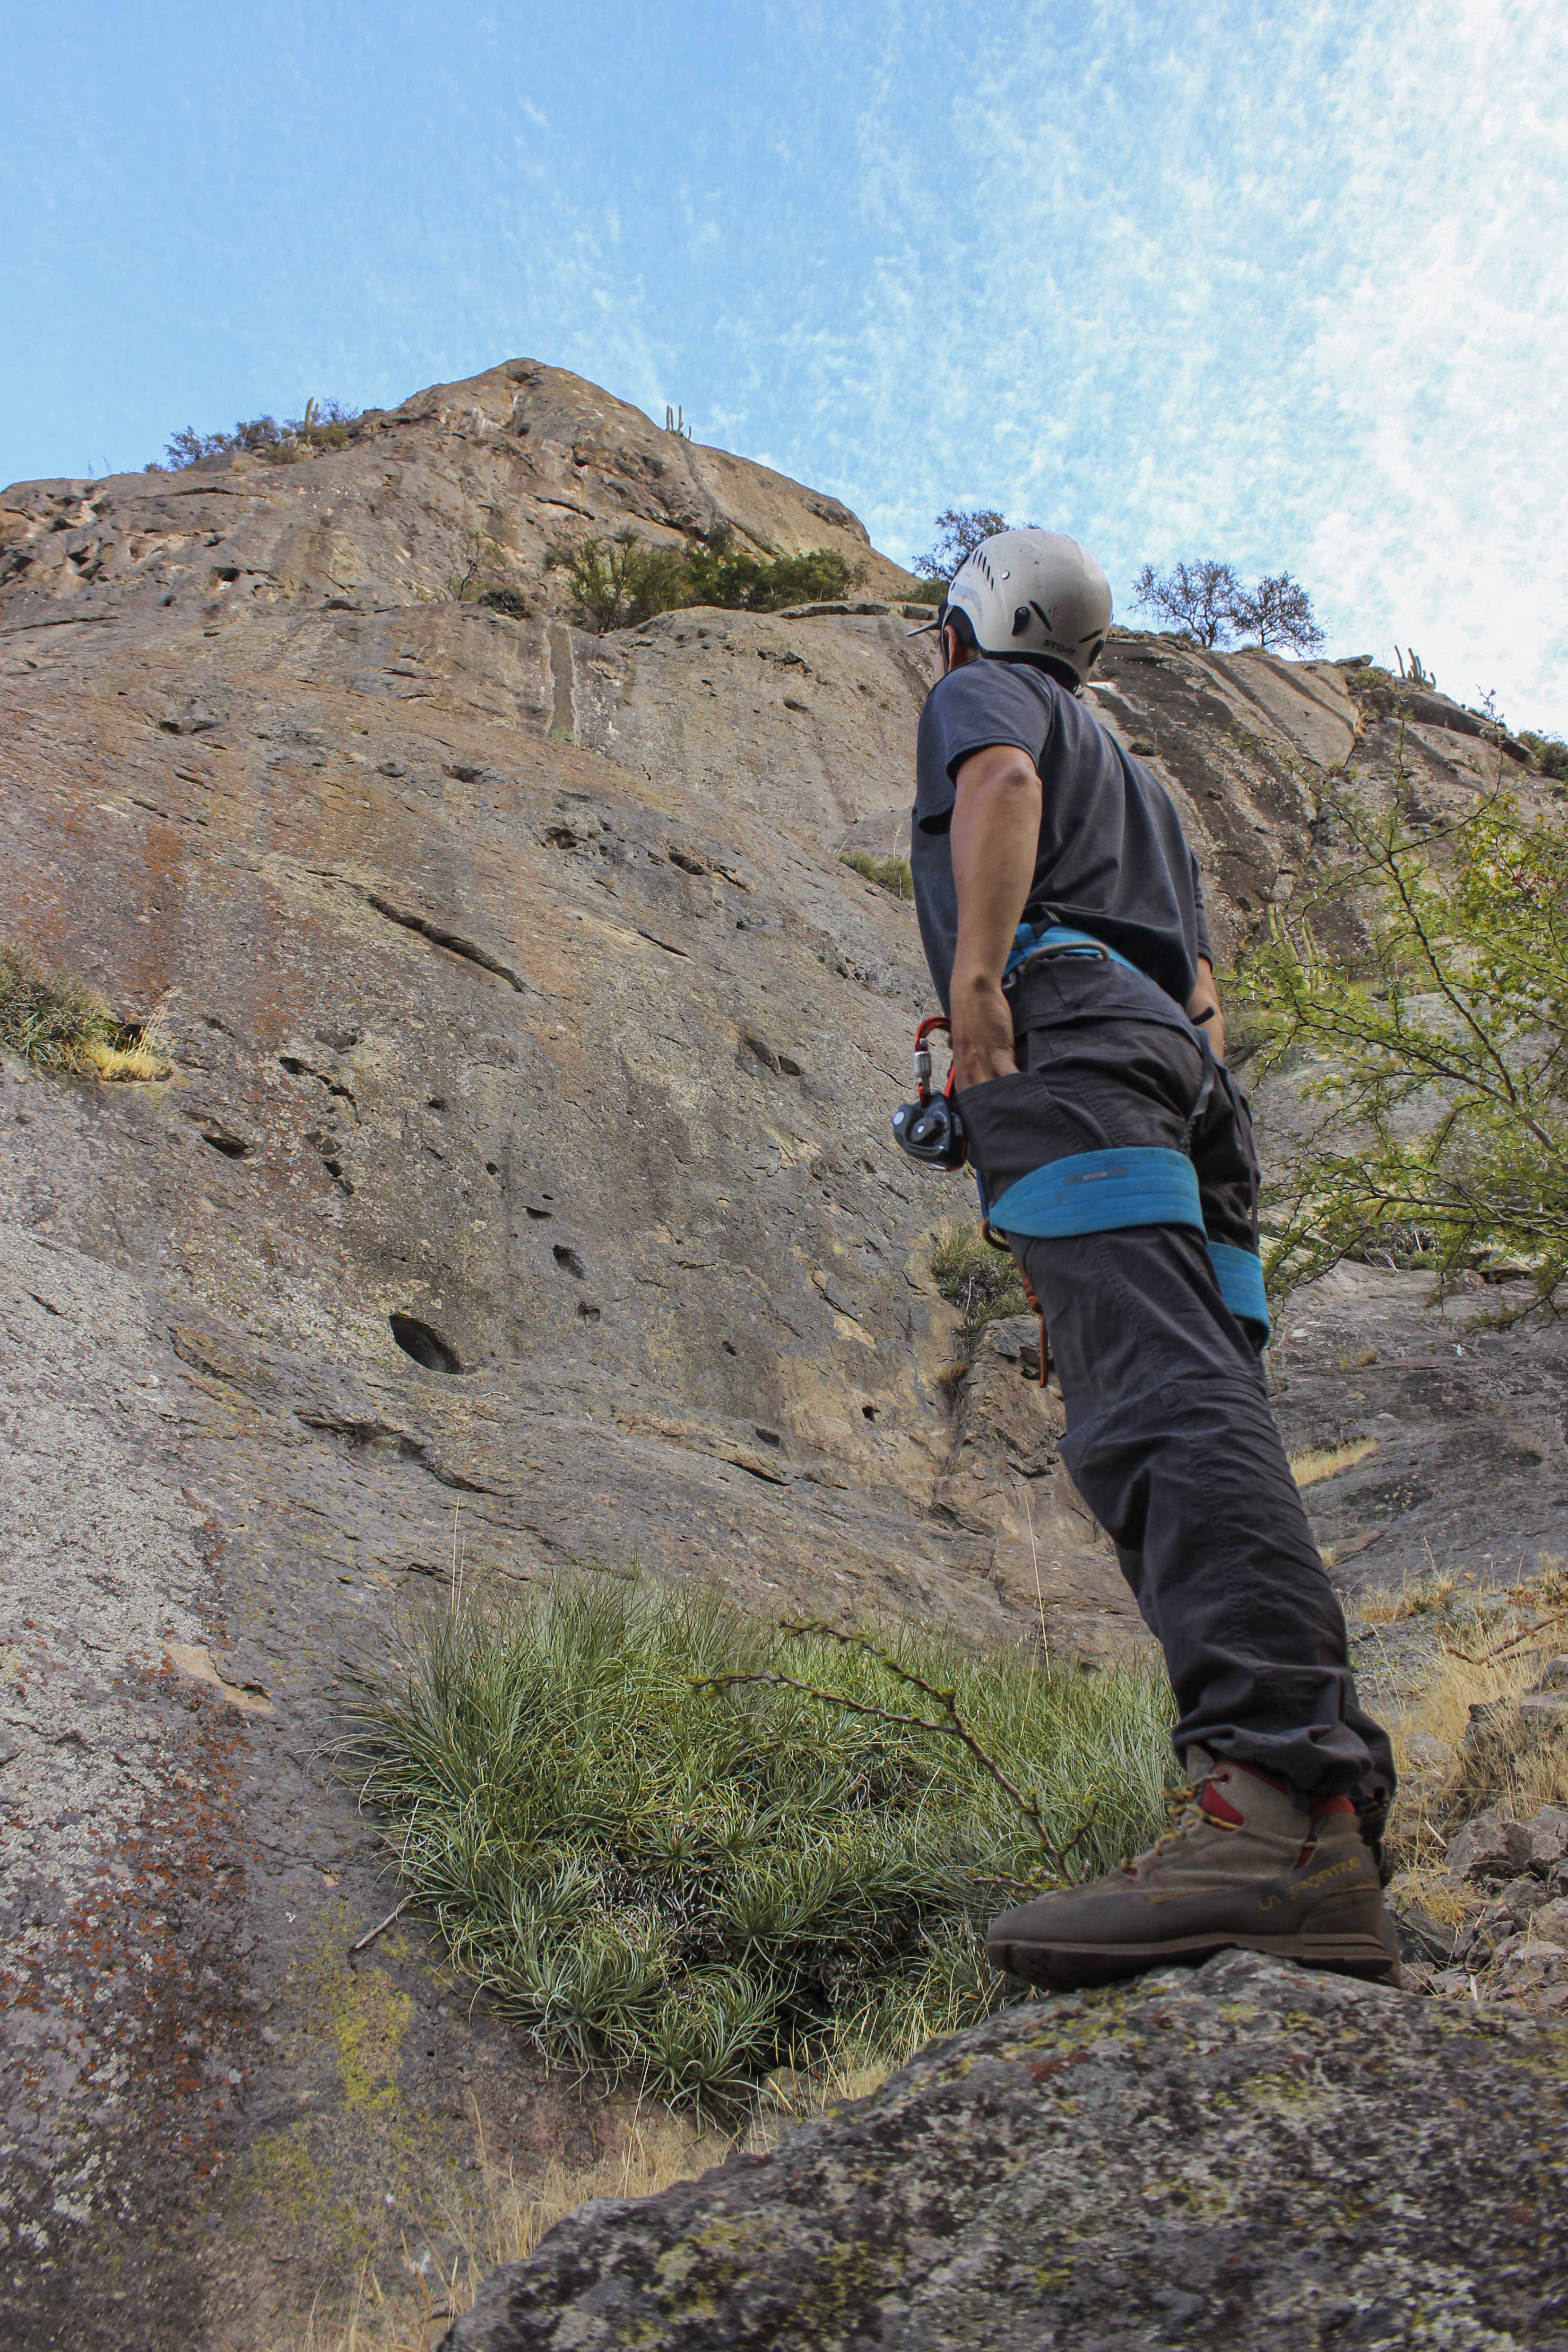 Un arrampicatore con l'imbracatura addosso, guardando una parete rocciosa a La Palmilla, in Cile